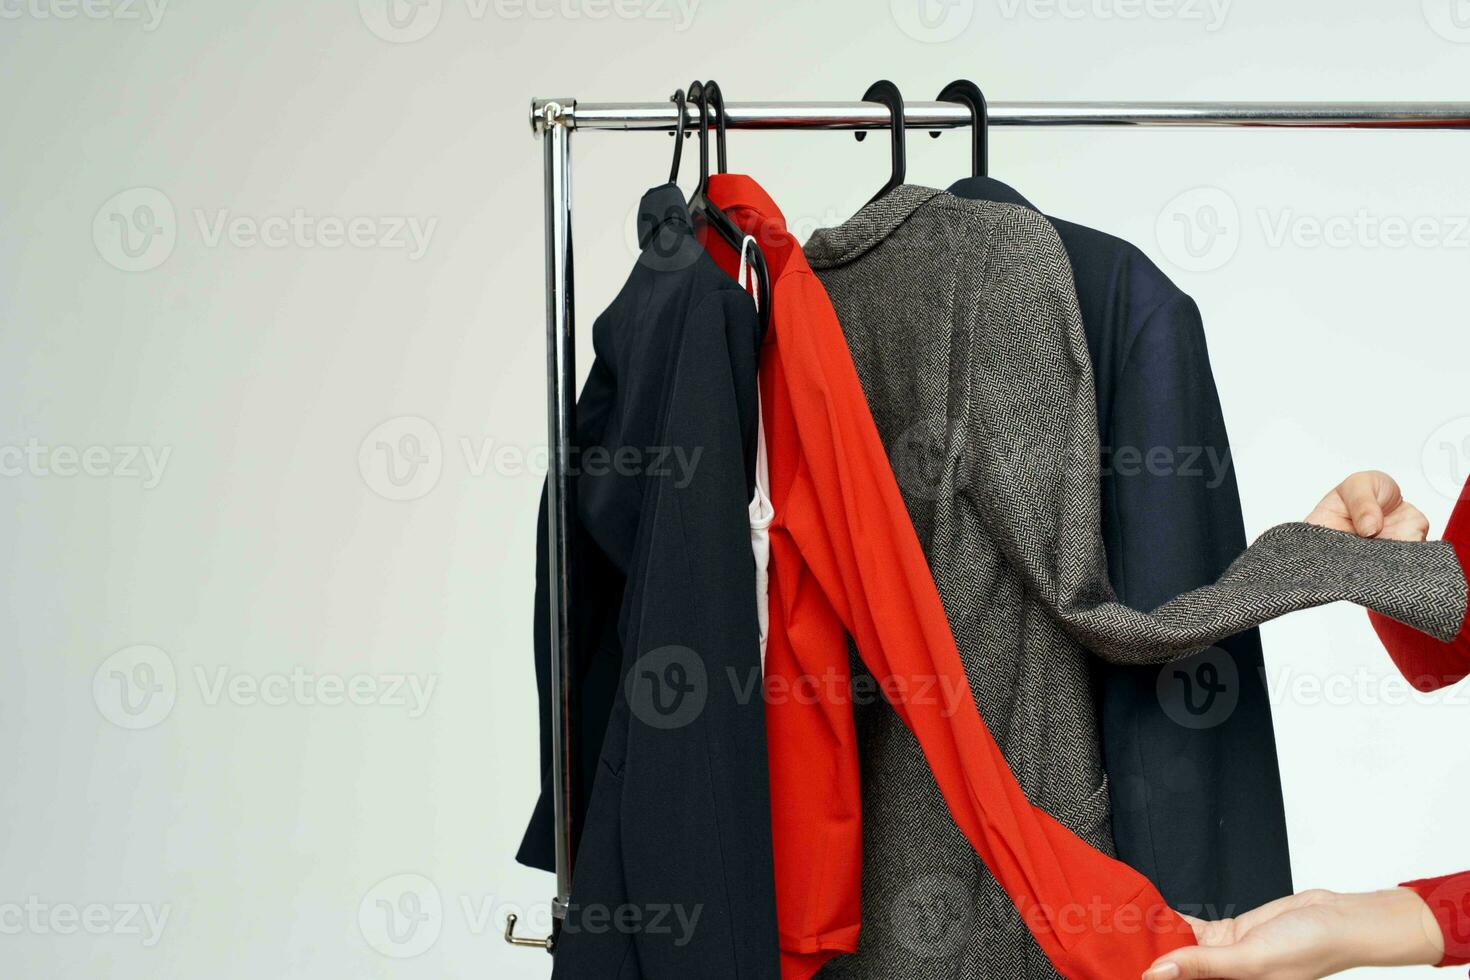 Clothing rack close-up photo